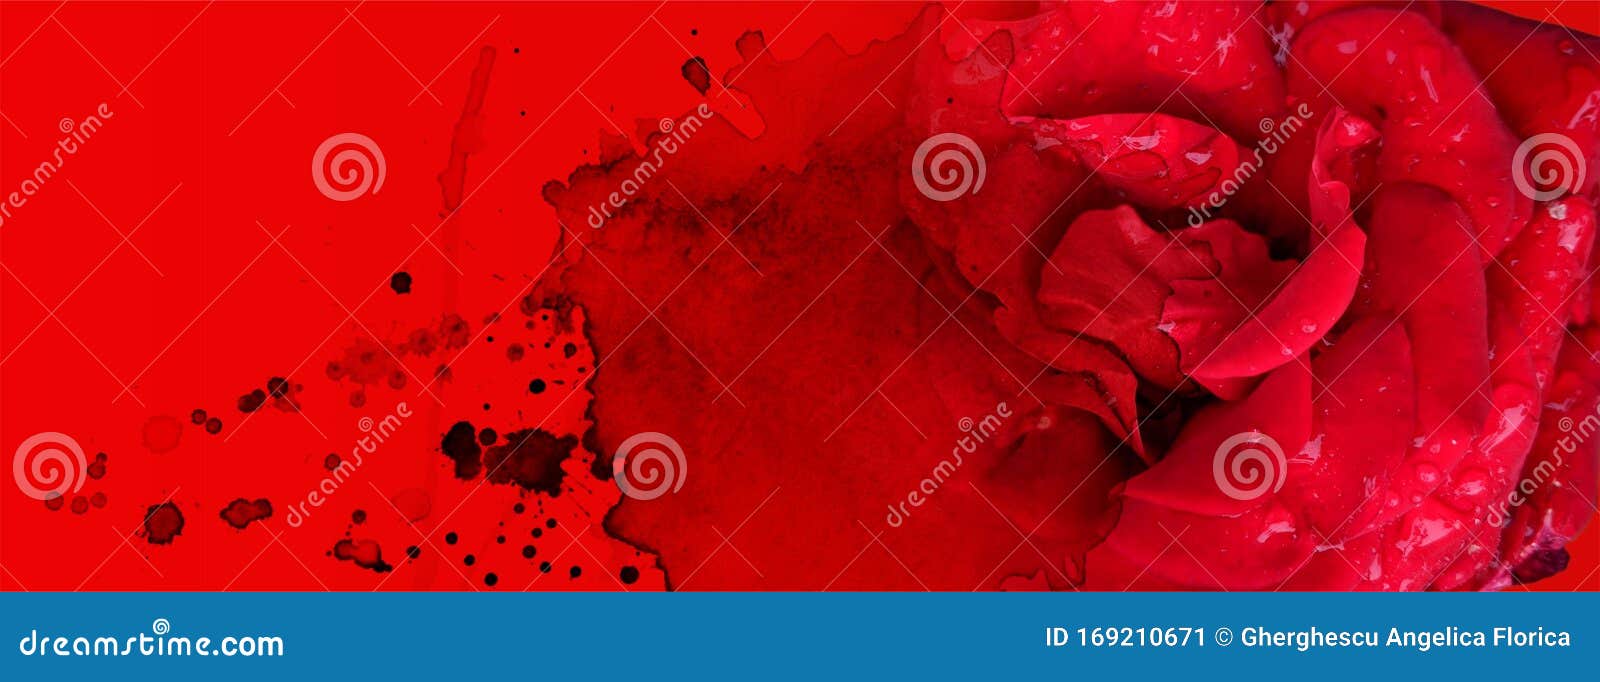 Banderas De San Valentín Con Fondo De Color Rojo Intenso Y Manchas De Color  Agua Imagen de archivo - Imagen de cubierta, hermoso: 169210671